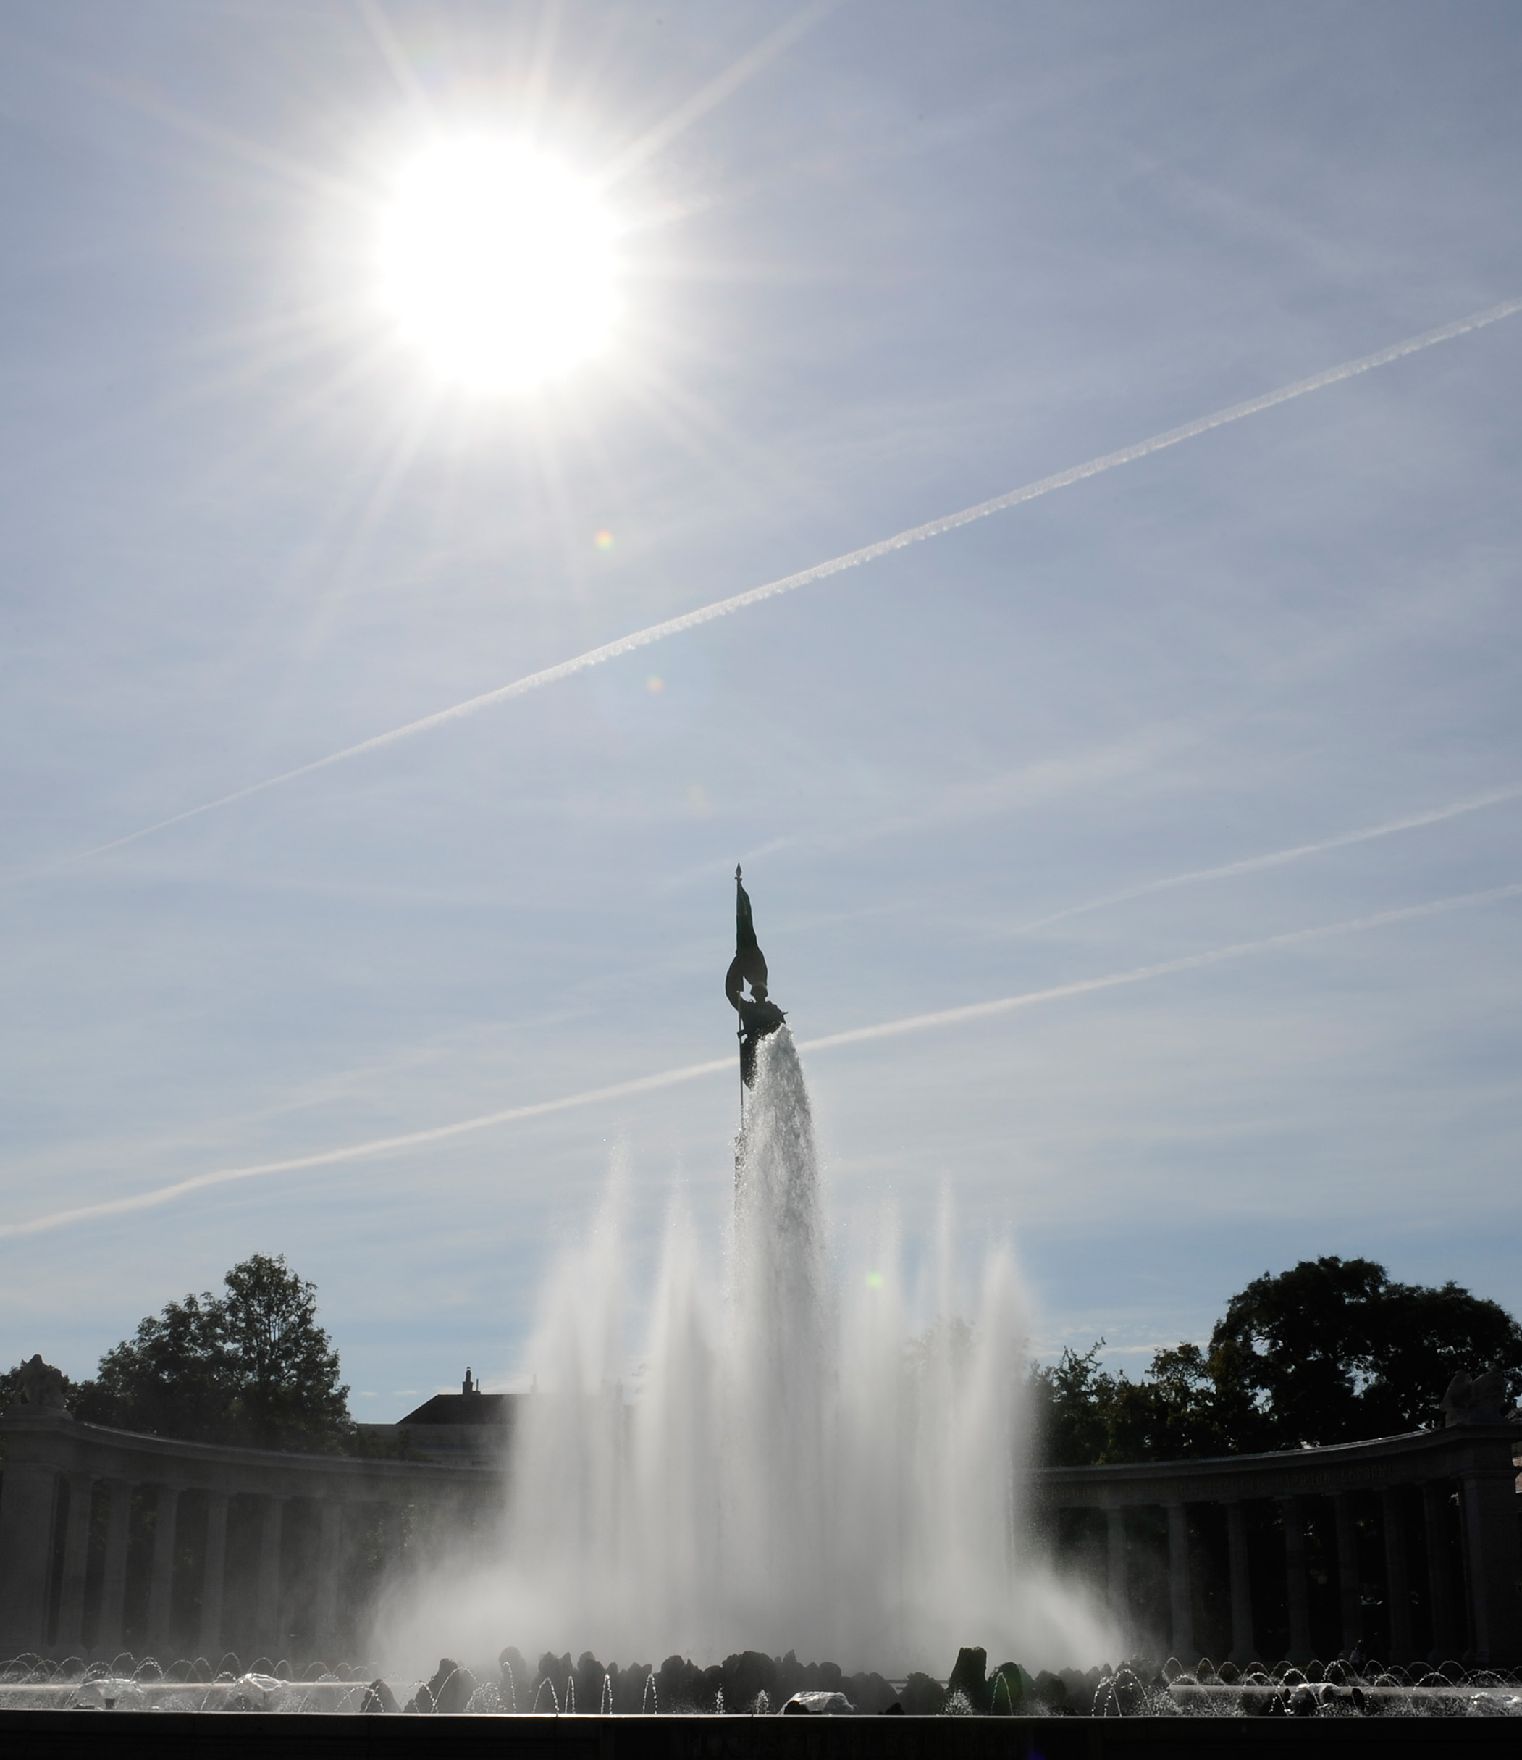 Der Hochstrahlbrunnen am Schwarzenbergplatz im Gegenlicht. Schlagworte: Brunnen, Himmel, Sonne, Stadtlandschaft, Statue, Wasser, Wolken